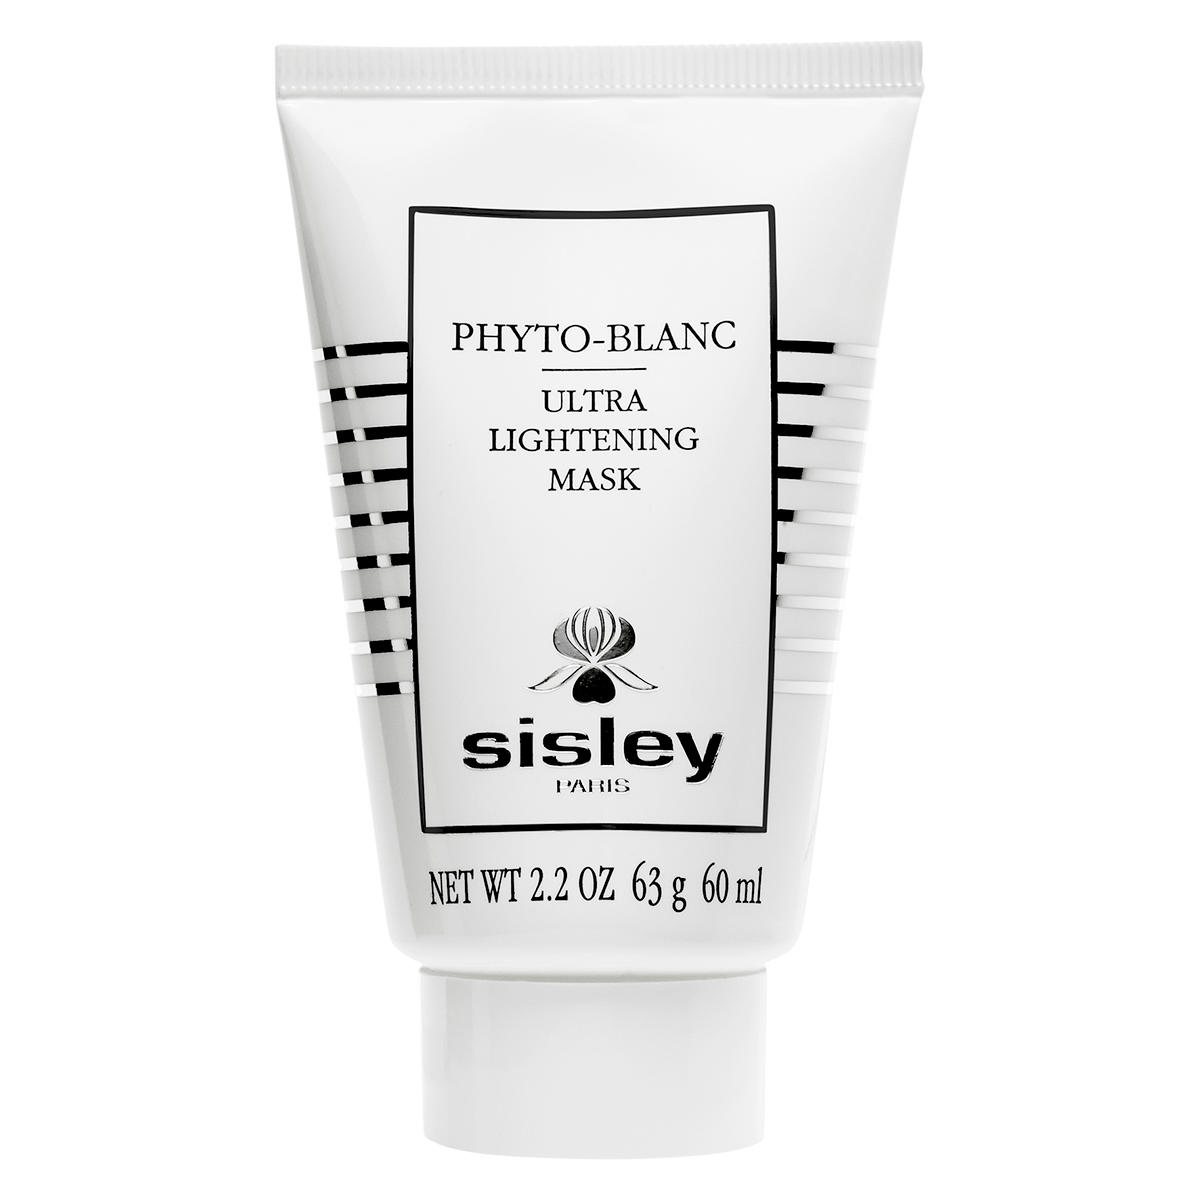 Sisley Paris Phyto-Blanc Phyto-Blanc Ultra Lightening Mask 60 ml - 1